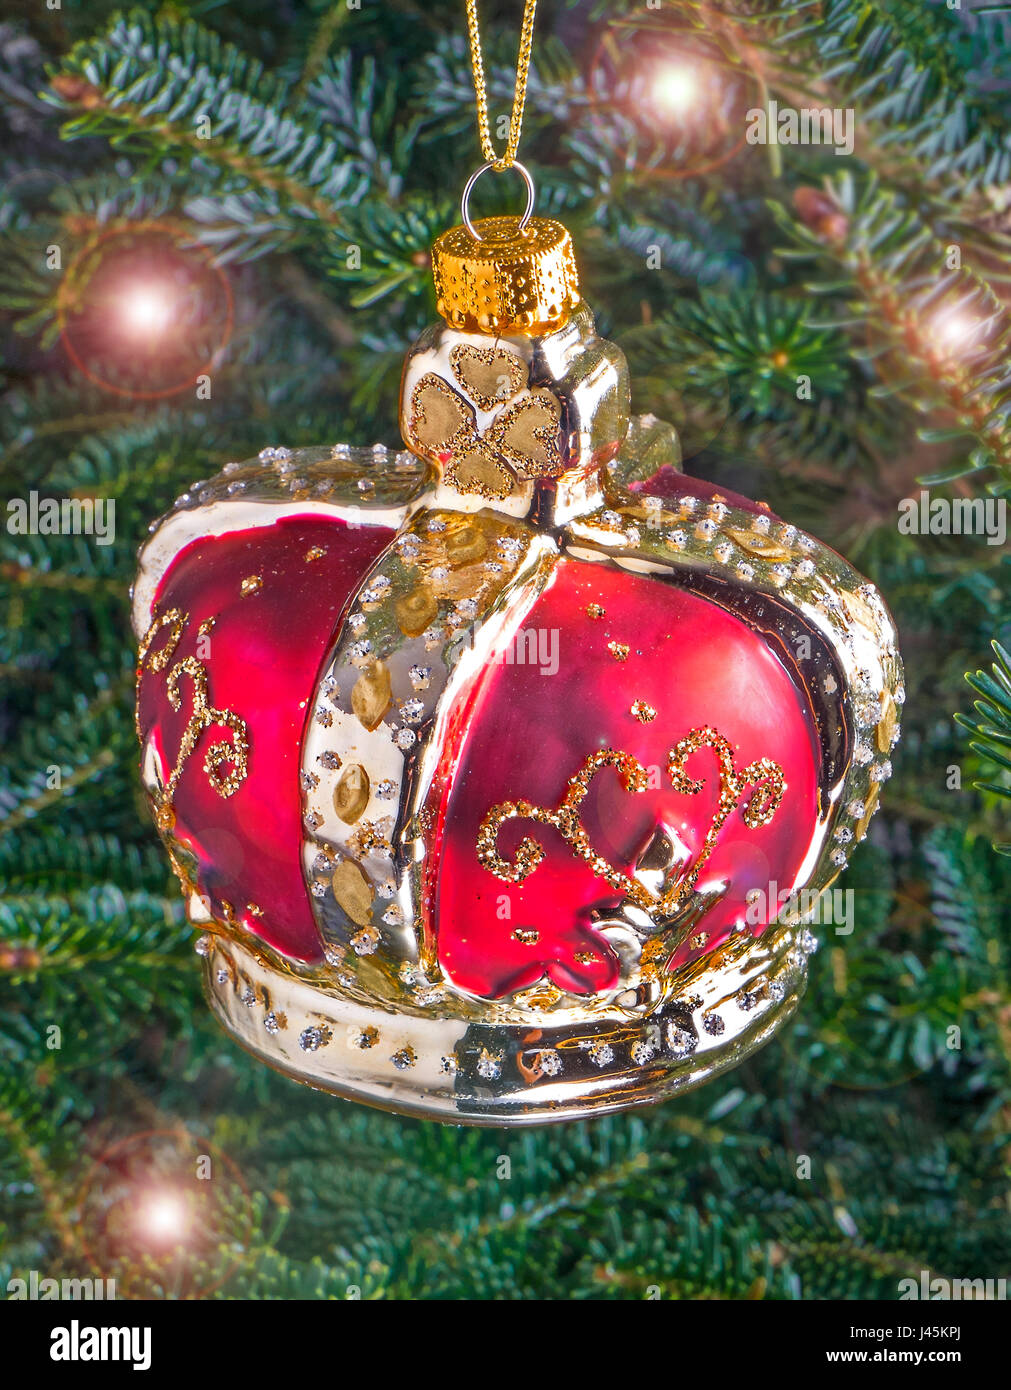 Pallina di natale appeso a un albero a forma di corona regale Foto Stock